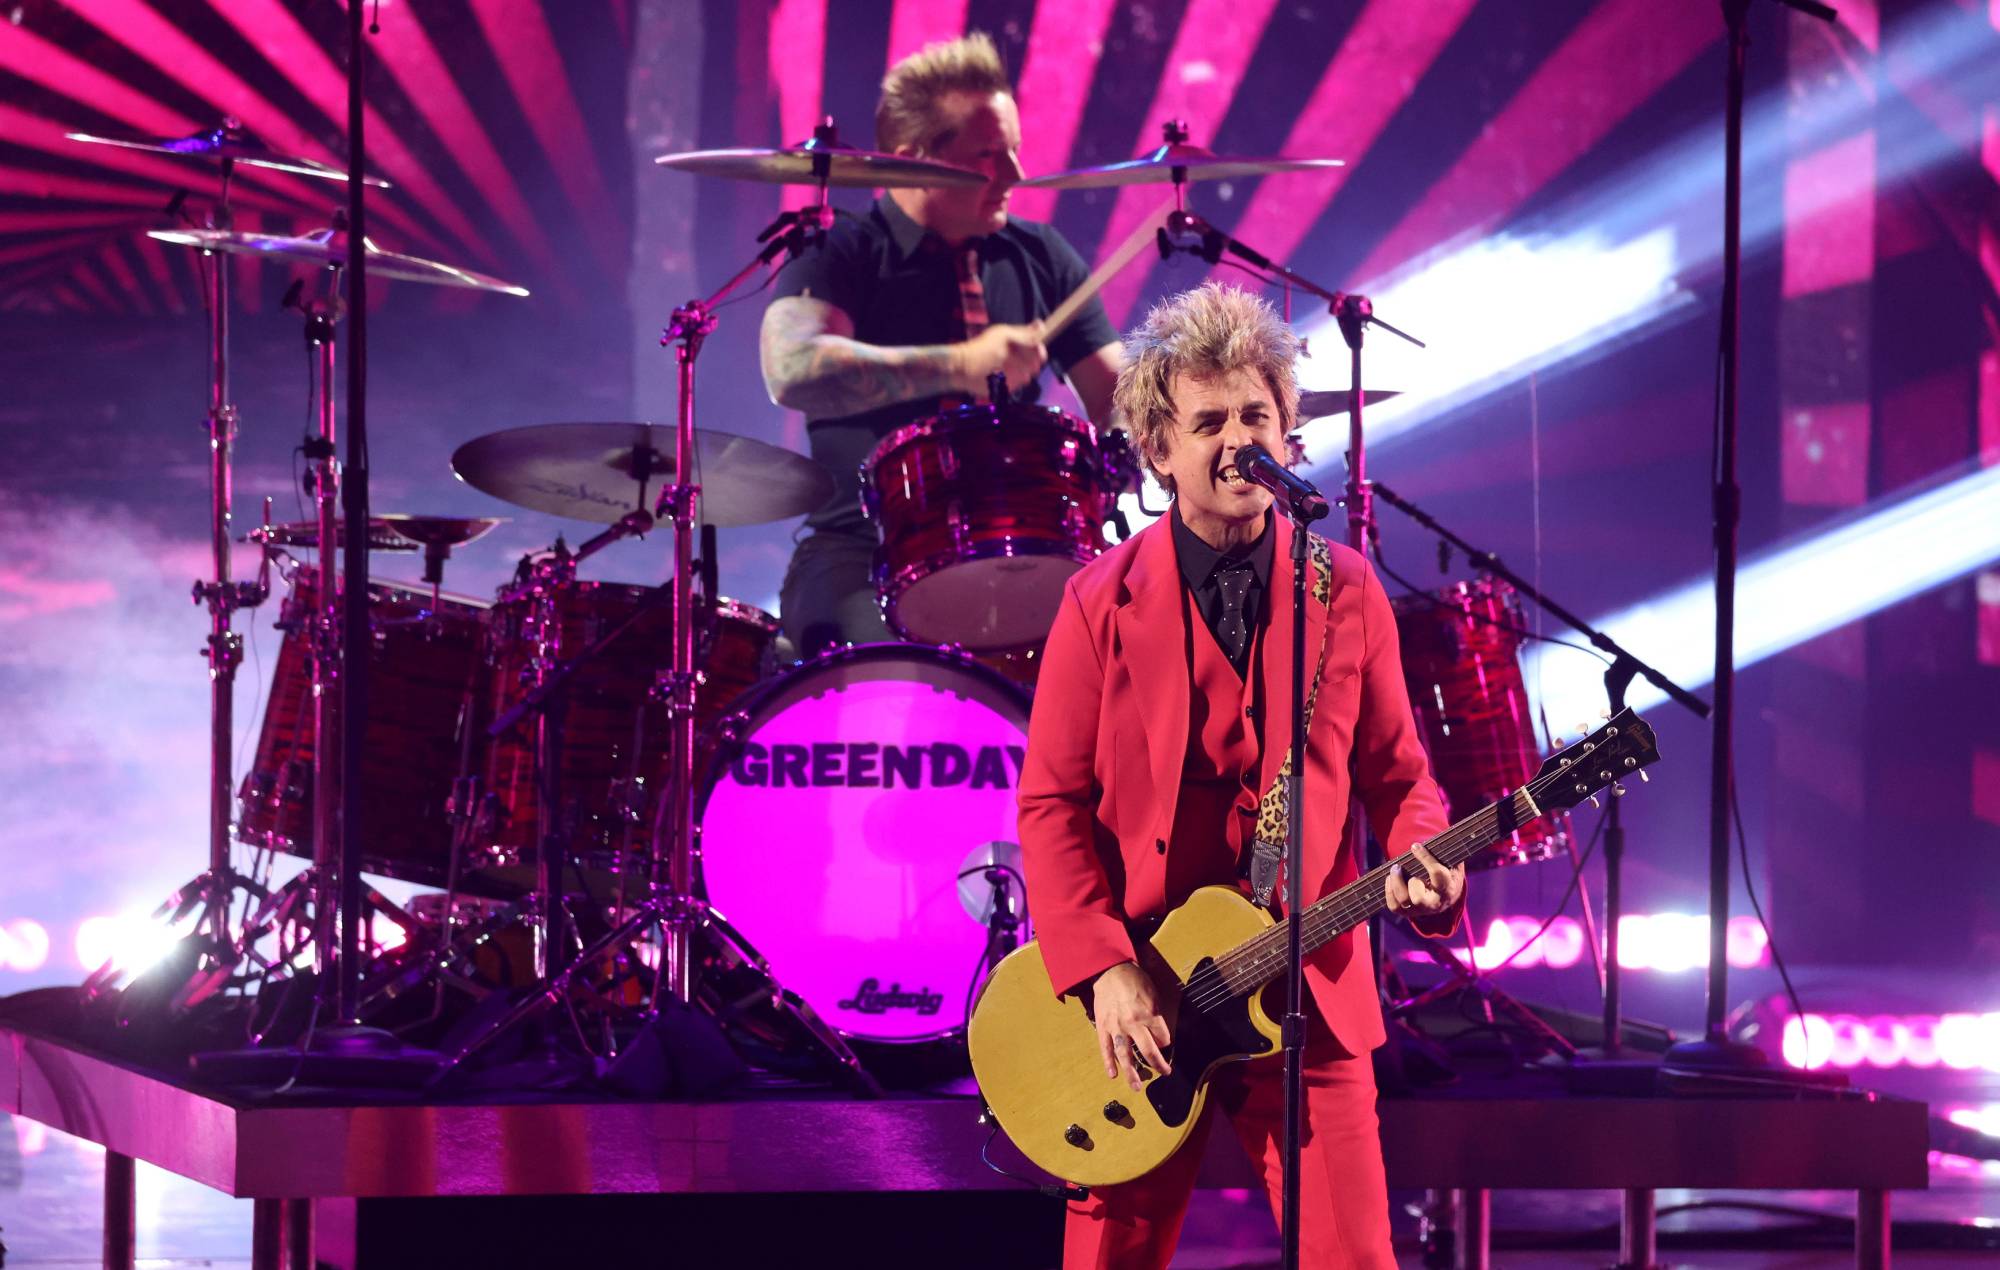 Green Day adelanta la gira mundial 'Saviors' tocando 'Dookie' y 'American Idiot' al completo en un concierto en un club íntimo